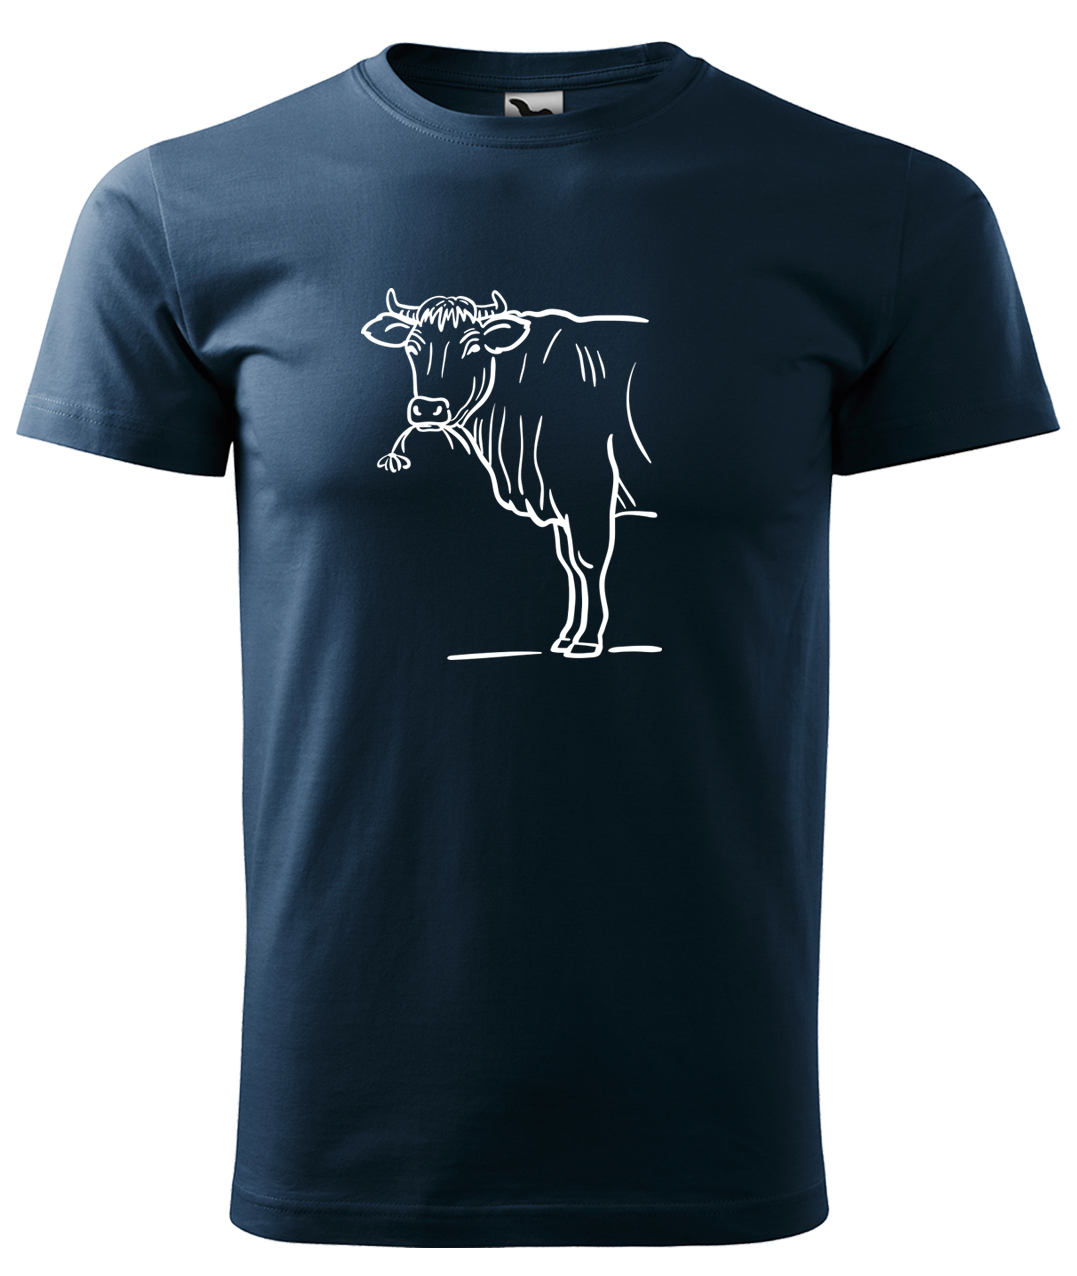 Dětské tričko s krávou - Býk Velikost: 4 roky / 110 cm, Barva: Námořní modrá (02), Délka rukávu: Krátký rukáv